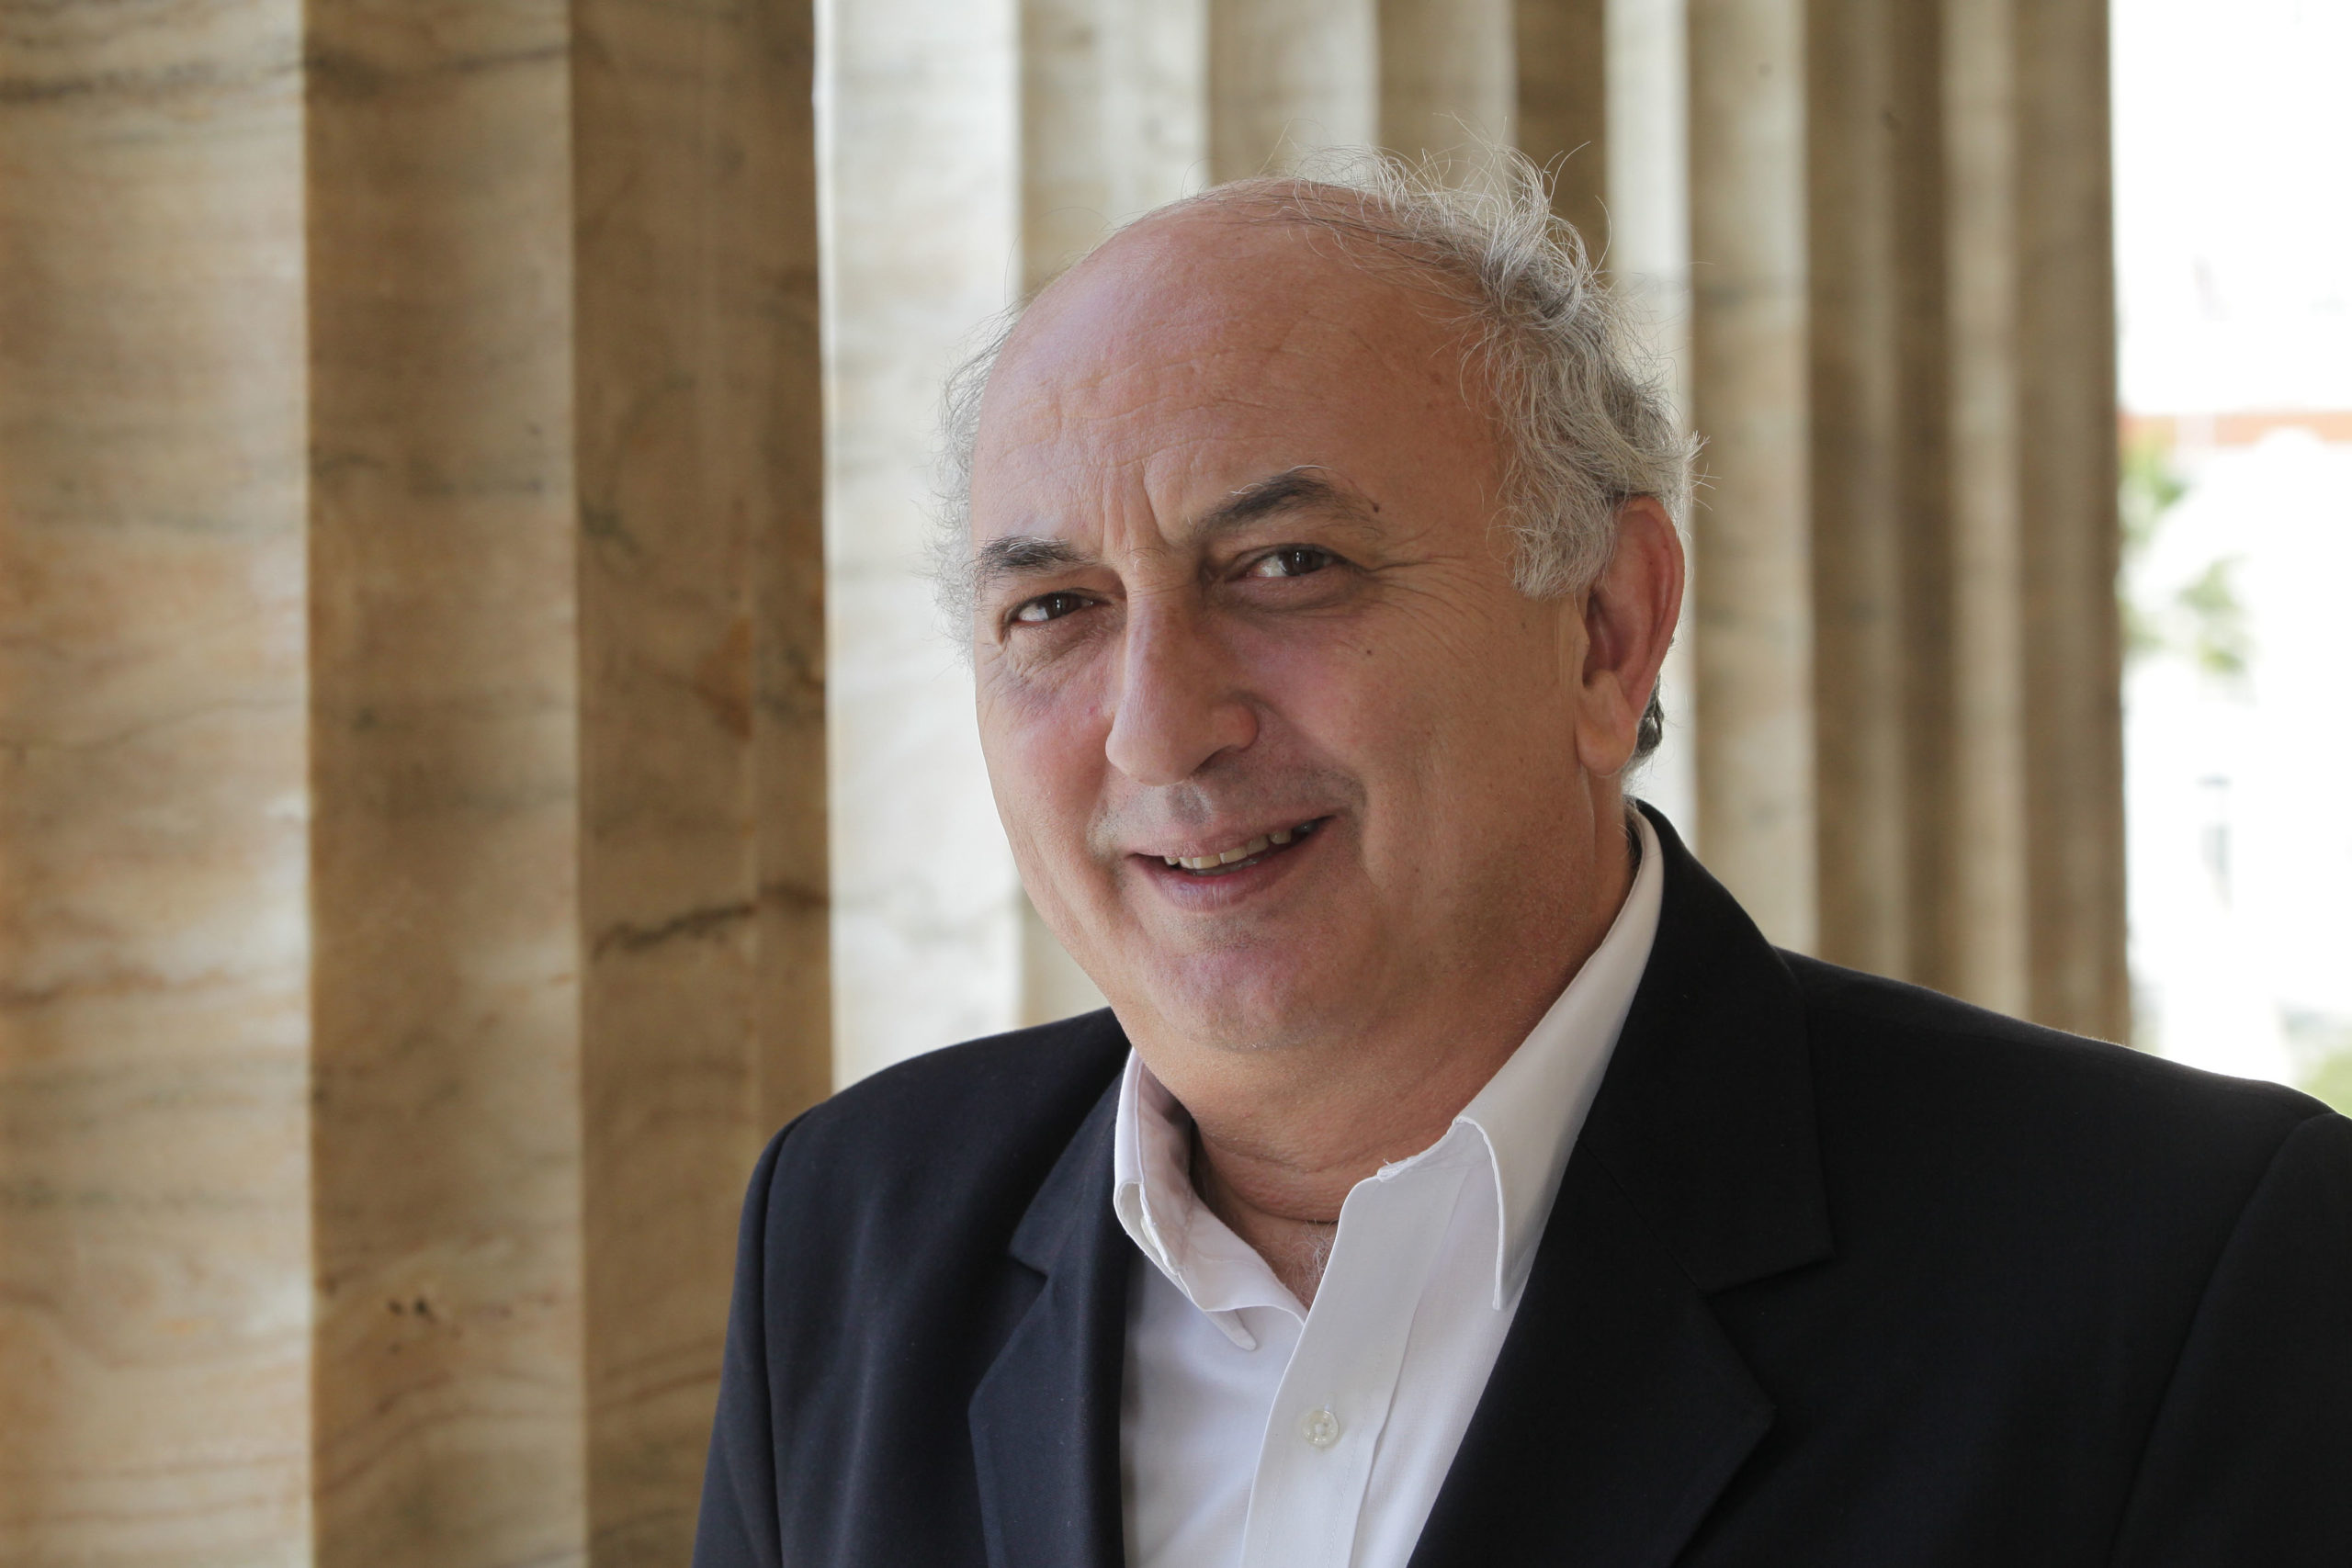 Γιάννης Αμανατίδης: Ποιος είναι ο νέος υφυπουργός Εξωτερικών από την Αριστερή Πλατφόρμα